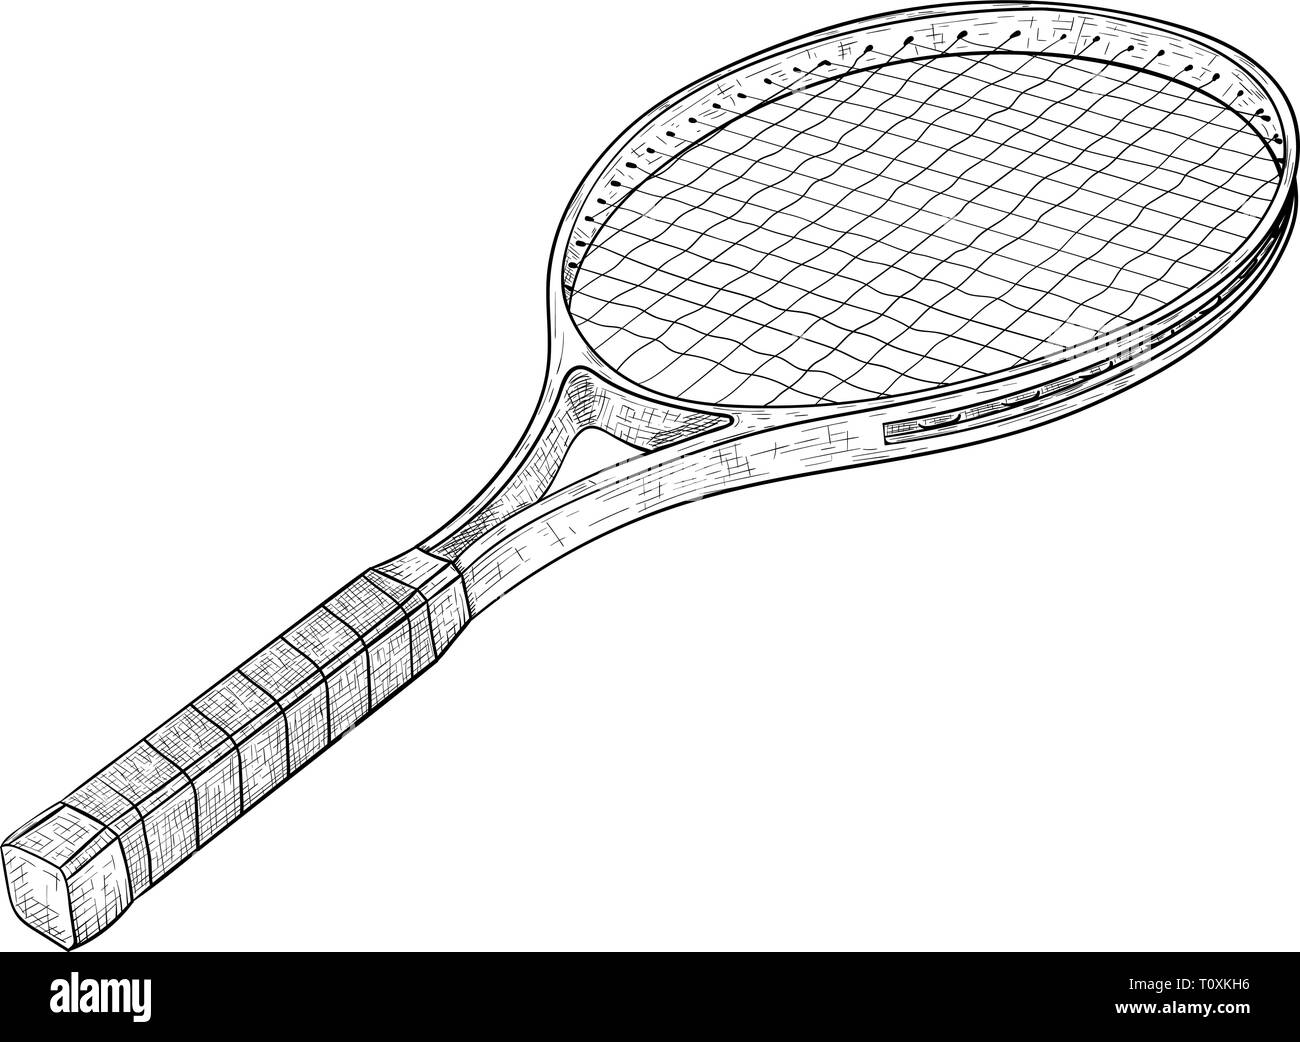 Raquette de Tennis. Croquis dessinés à la main, Illustration de Vecteur